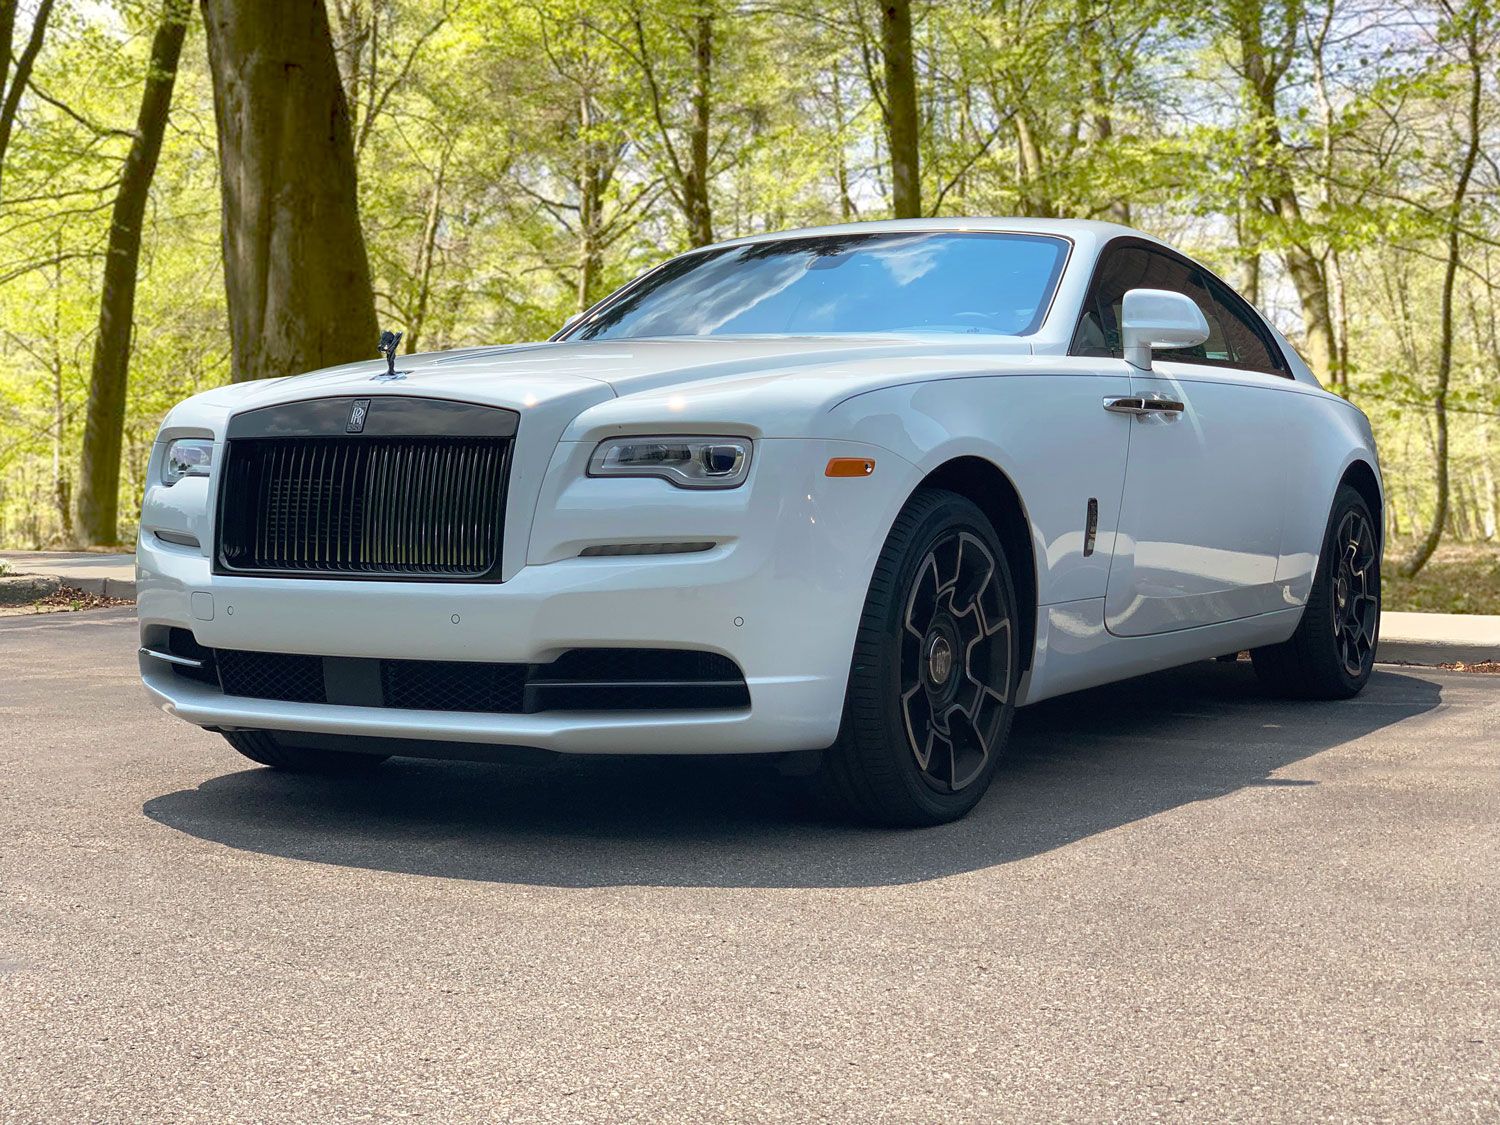 2019 RollsRoyce Wraith  Rolls royce Rolls royce wraith interior Rolls  royce wraith